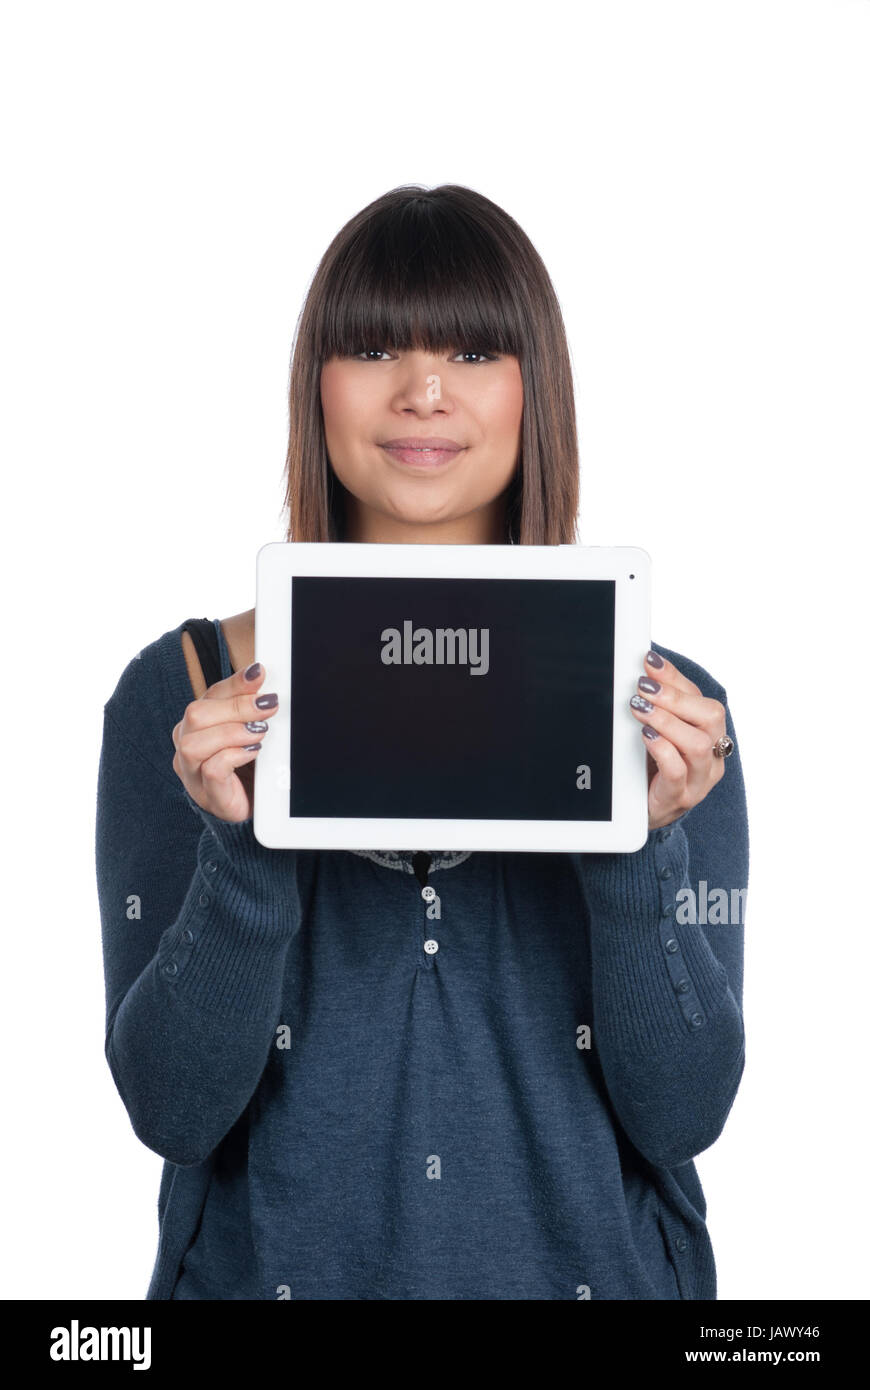 Freigestelltes Foto einer jungen Frau, die ein Tablet zeigt, wobei sie dieses waagerecht hält Stock Photo